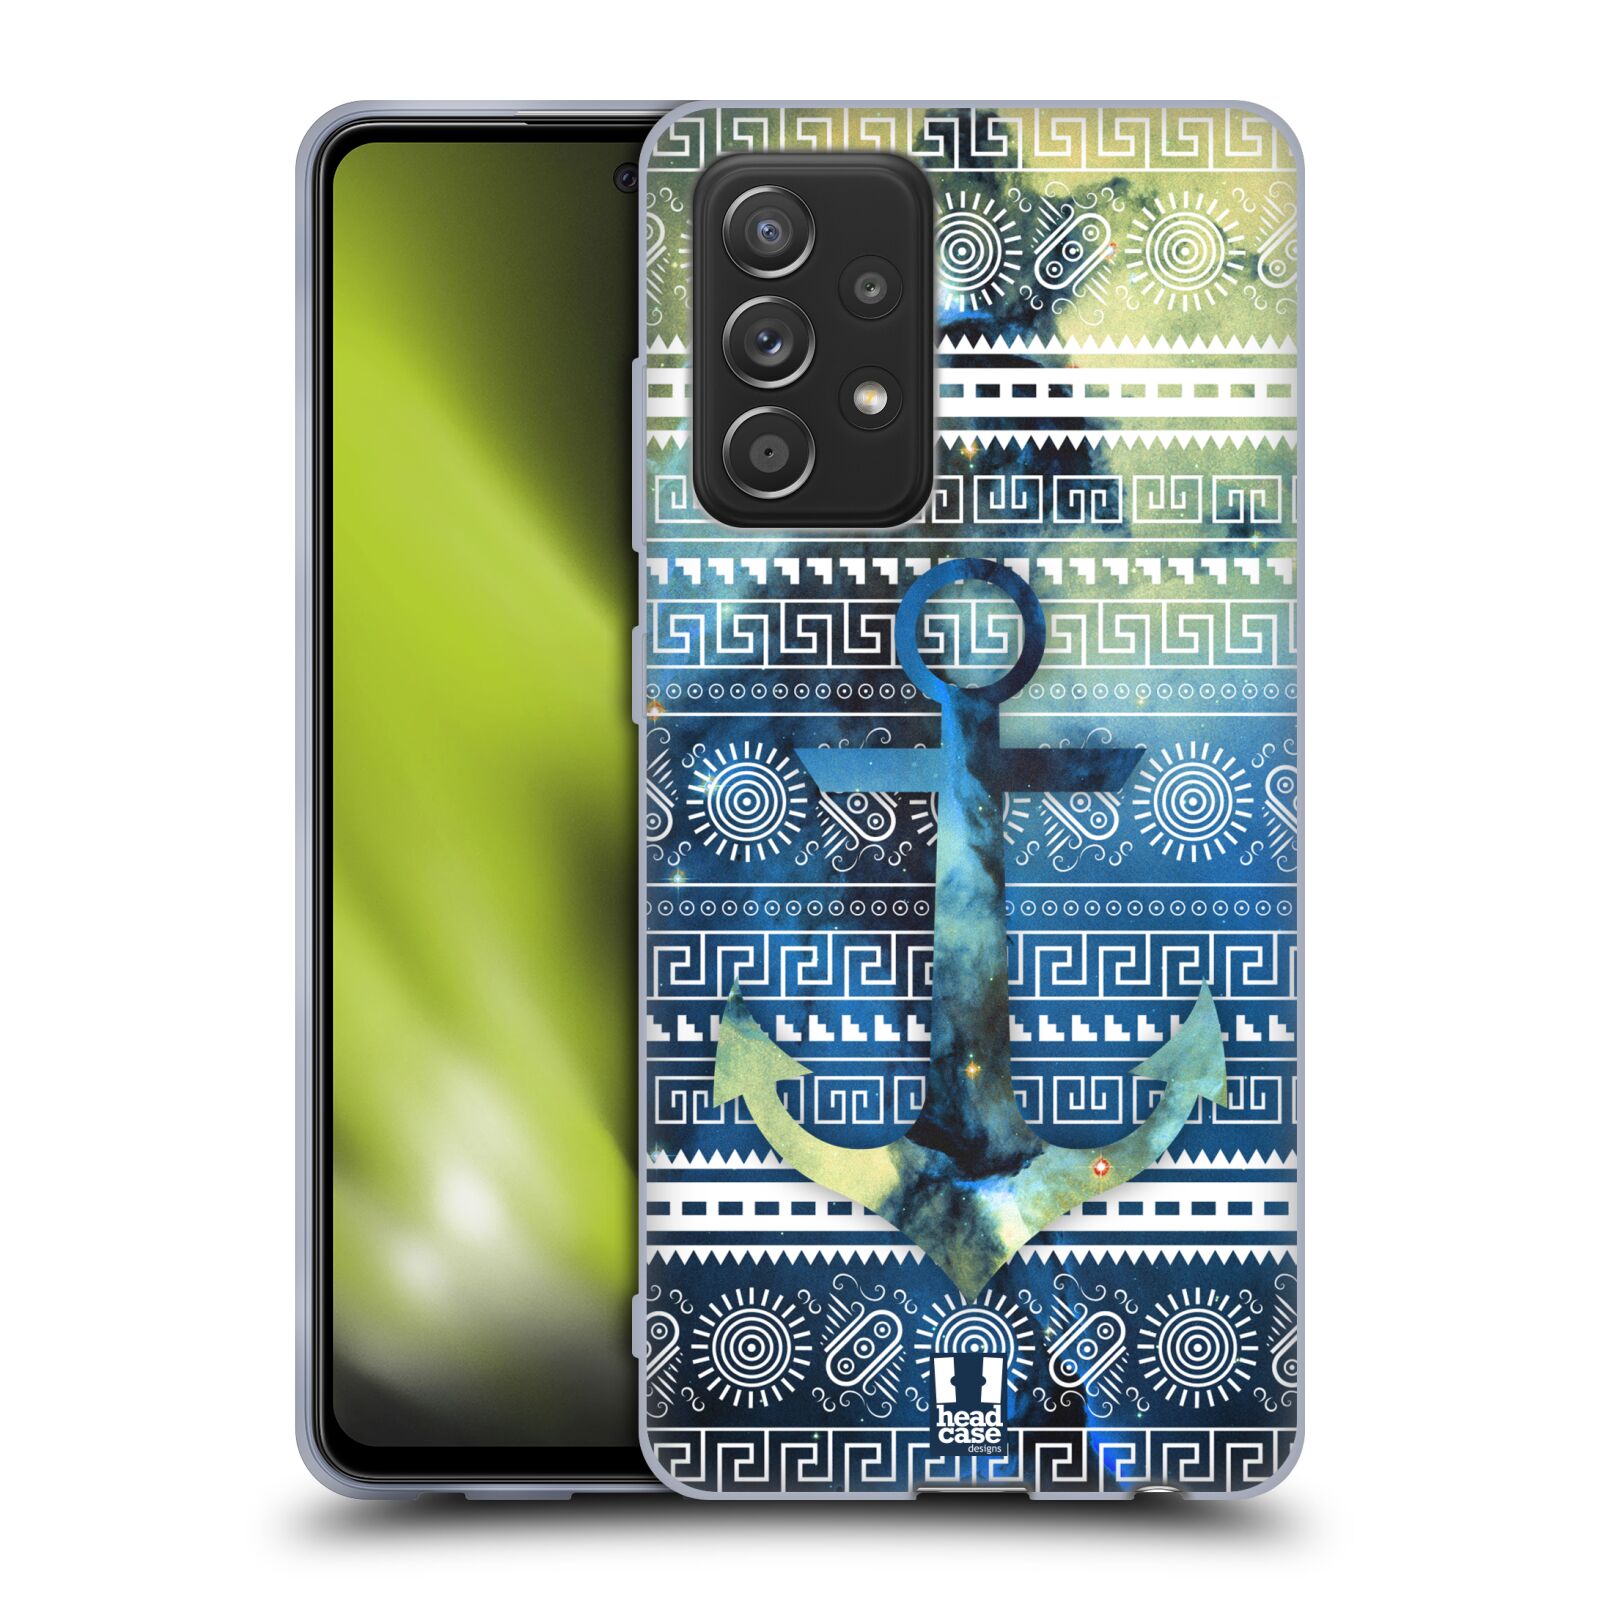 Silikonové pouzdro na mobil Samsung Galaxy A52 / A52 5G / A52s 5G - Head Case - NEBULA KOTVA (Silikonový kryt, obal, pouzdro na mobilní telefon Samsung Galaxy A52 (SM-A525F) / Samsung Galaxy A52 5G (SM-A526F) / Samsung Galaxy A52s 5G (SM-A528F) s motivem)